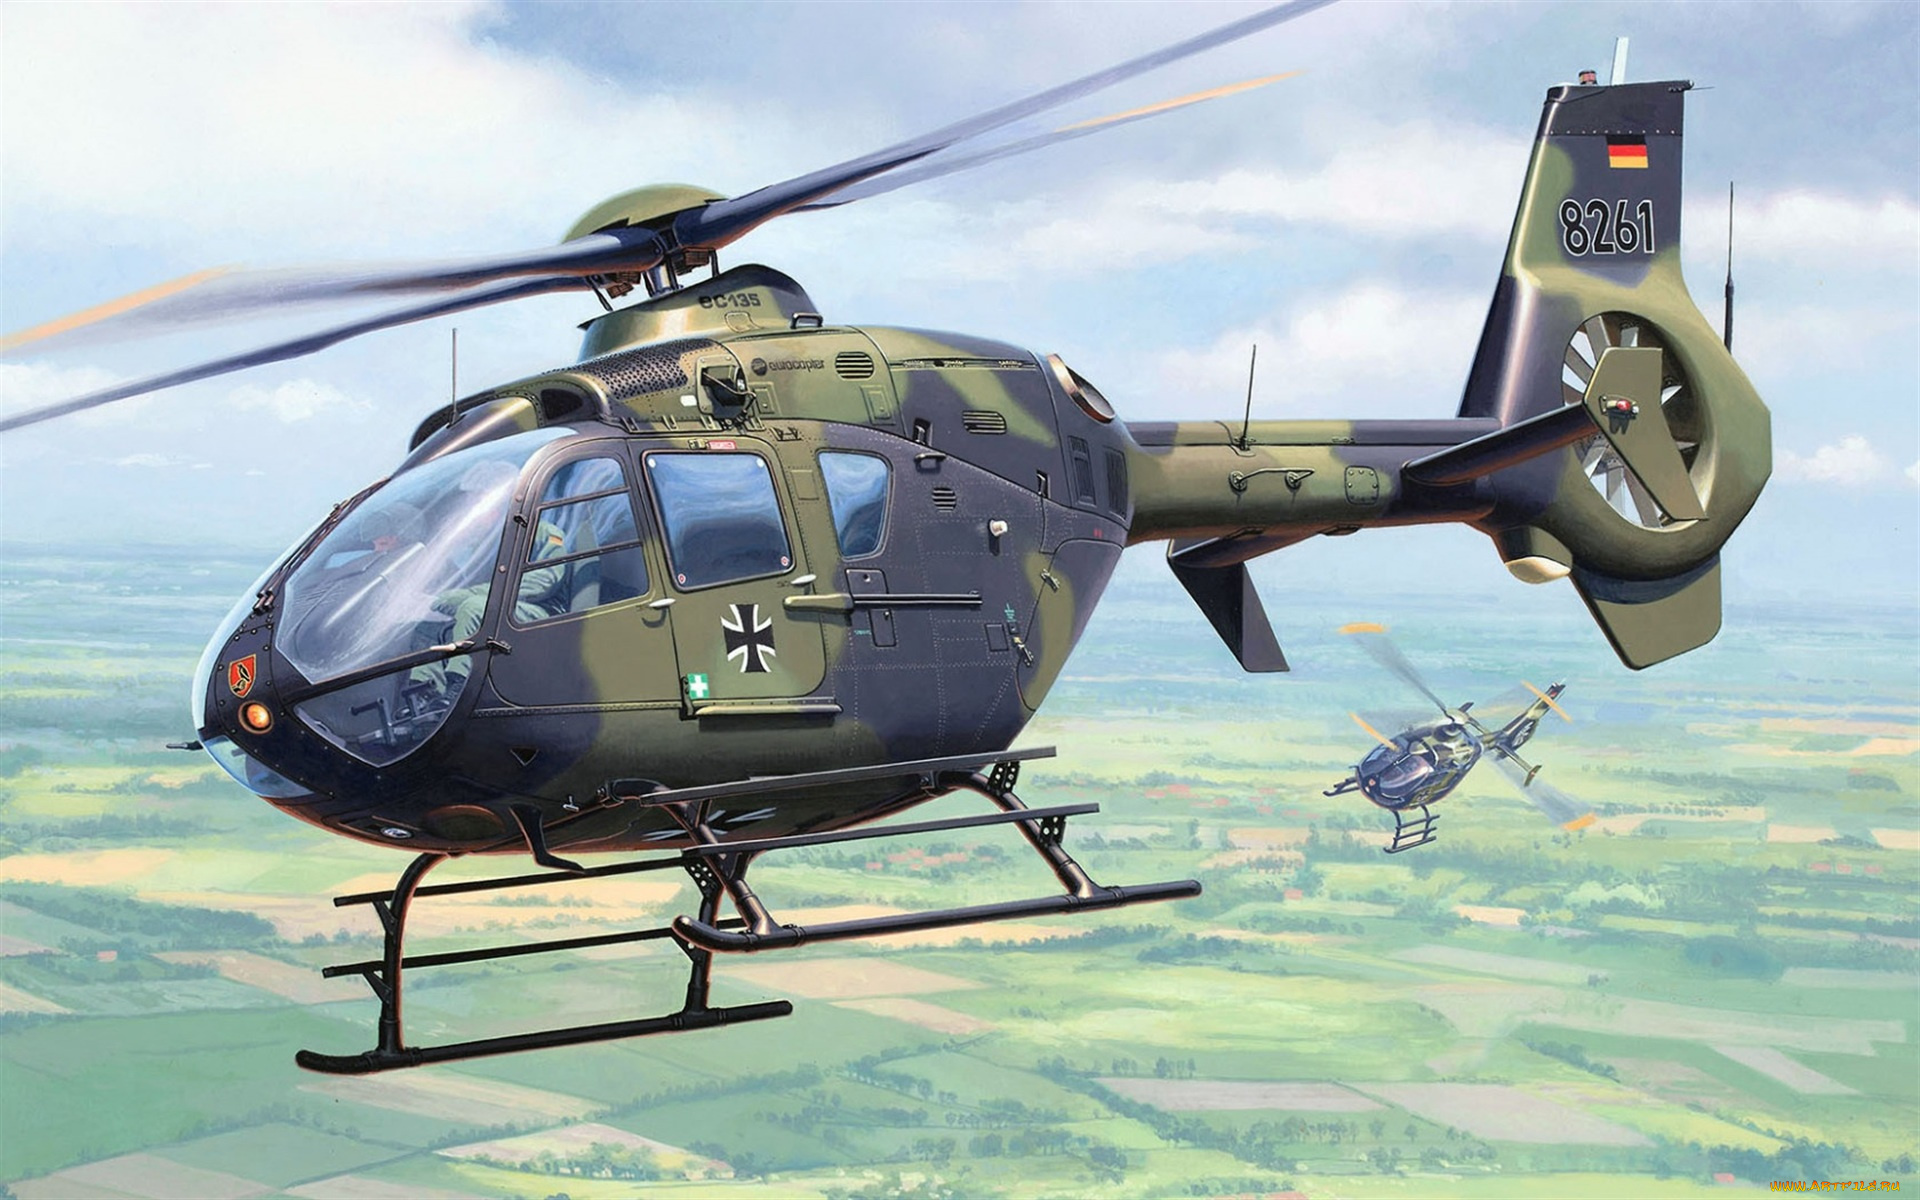 eurocopter, ec135, авиация, 3д, рисованые, v-graphic, ввс, германии, airbus, вертолеты, люфтваффе, военный, вертолет, немецкий